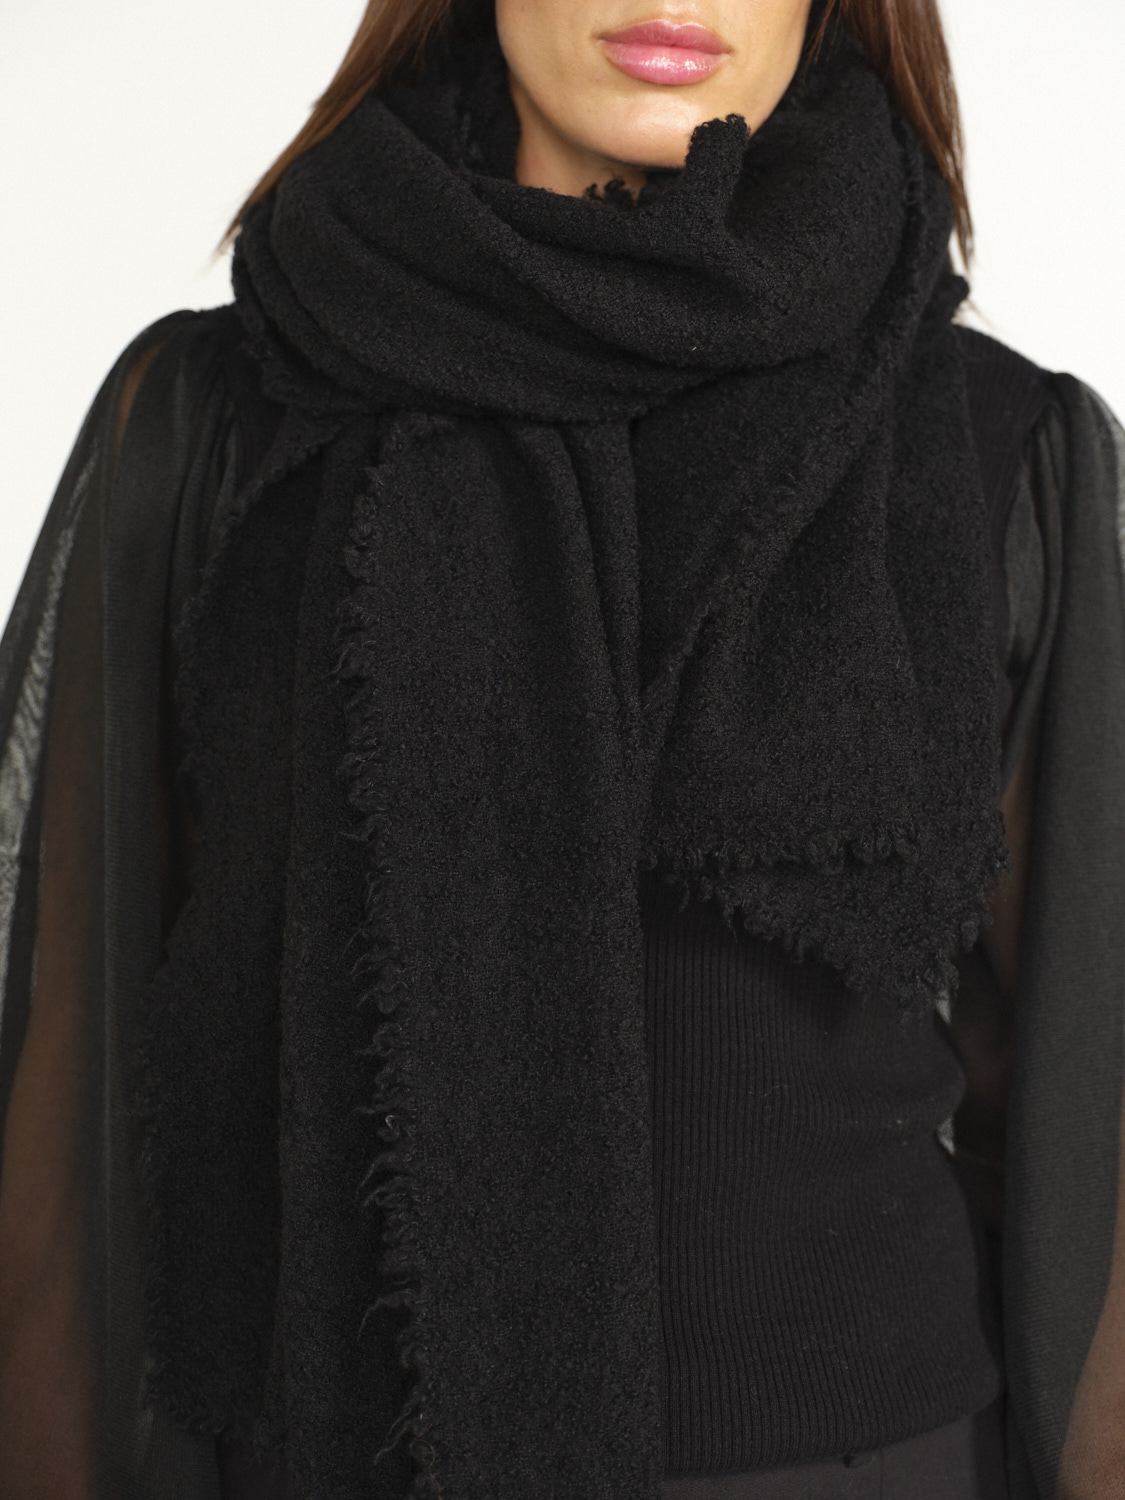 Faliero Sarti Alexia - Écharpe rectangulaire en laine et cachemire schwarz Taille unique